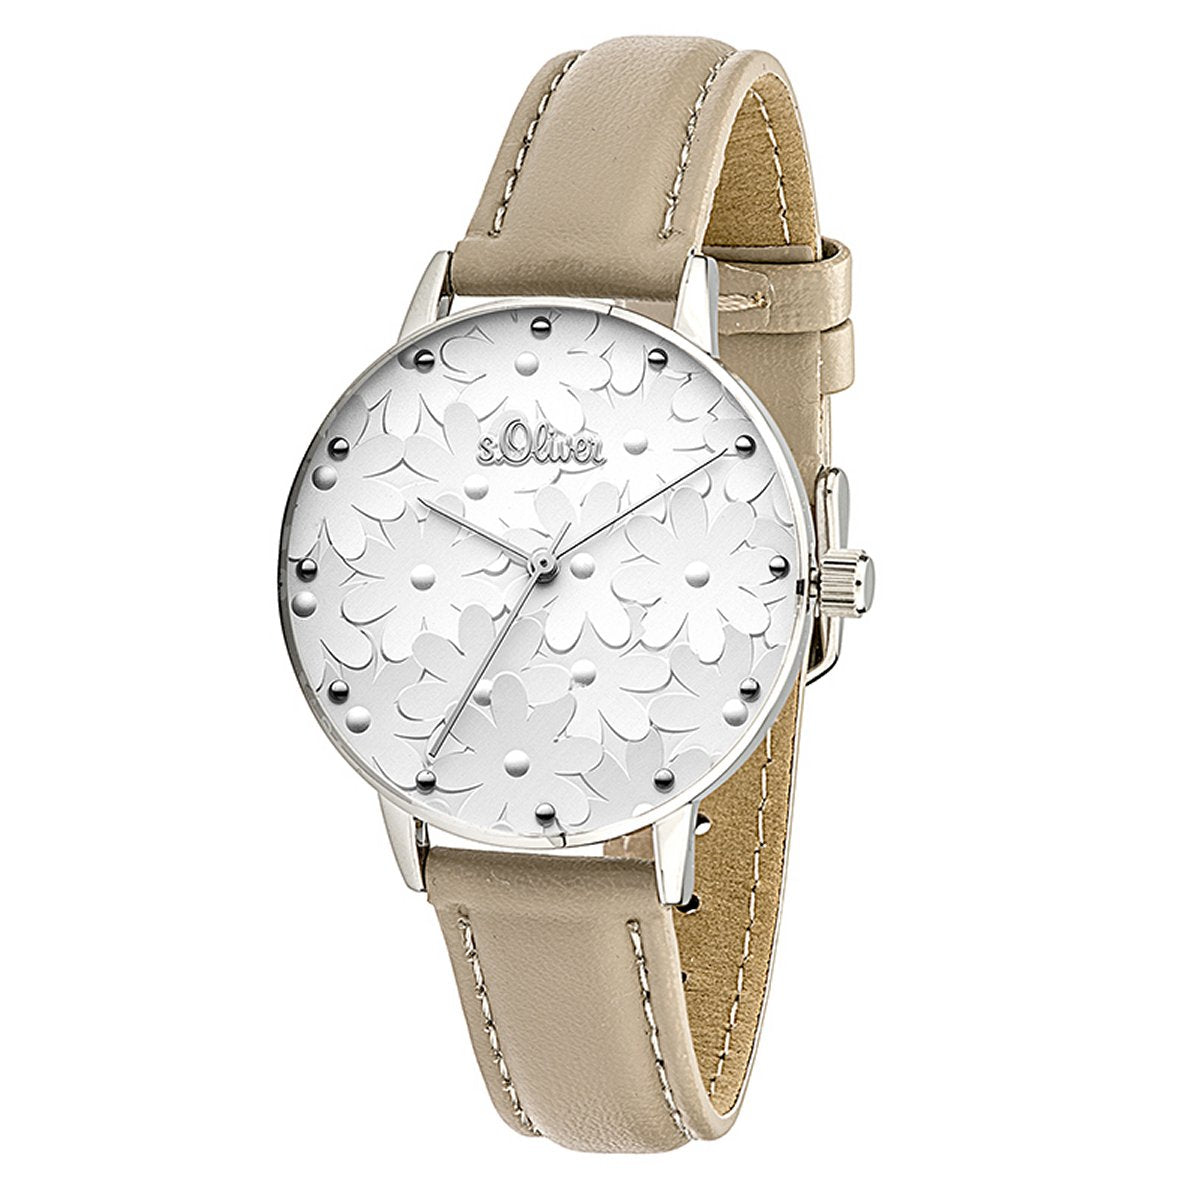 S Oliver Damen Uhr Armbanduhr Leder So 3466 Lq Preiswert24